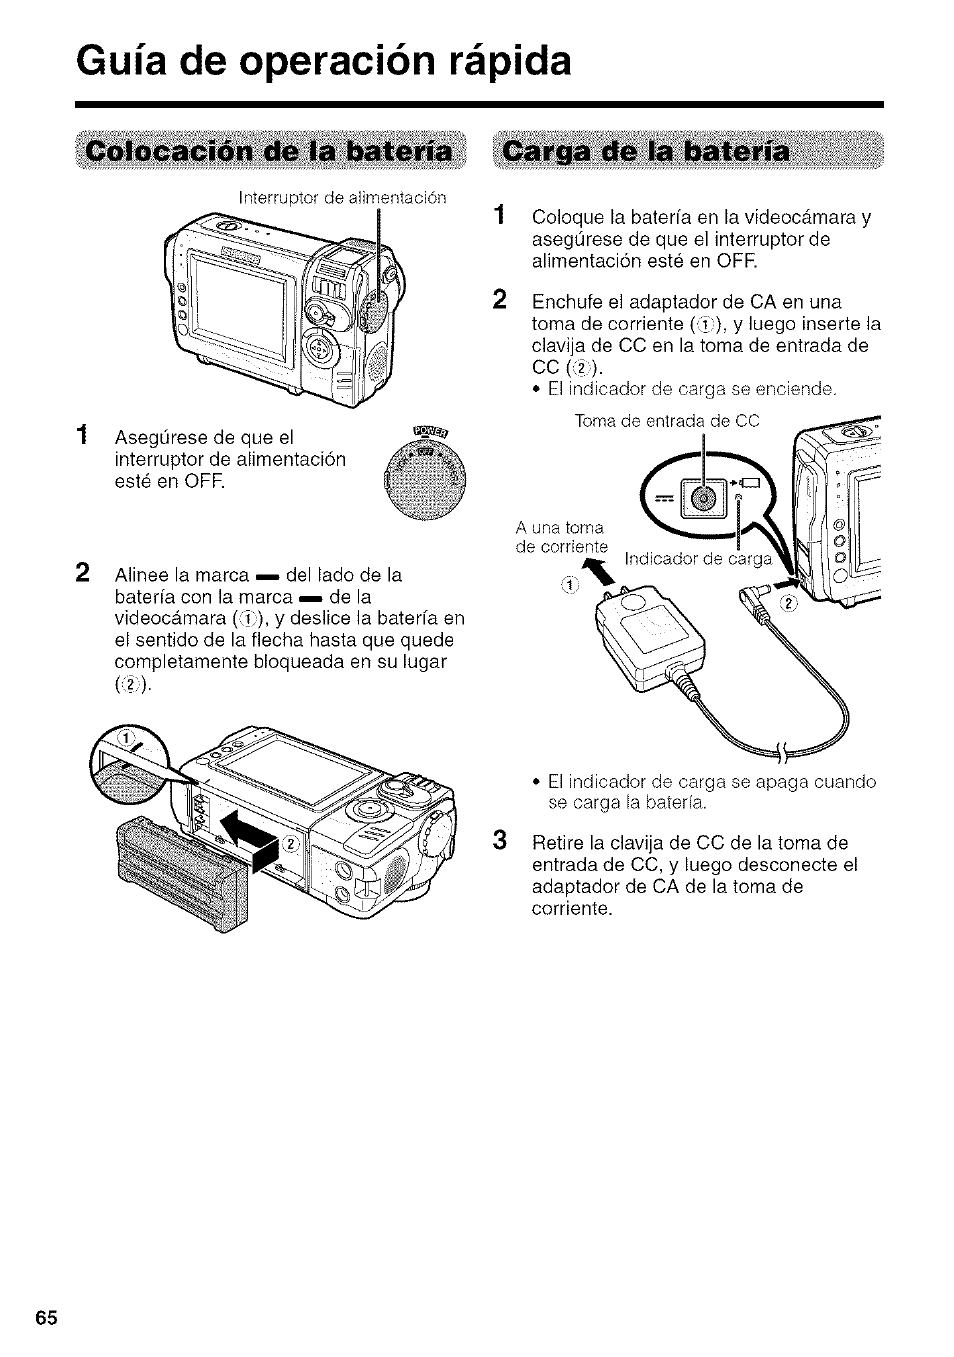 Guía de operación rápida, Carga de la batería, Colocación de la batería | Sharp VIEWCAM VL-NZ50U User Manual | Page 78 / 83